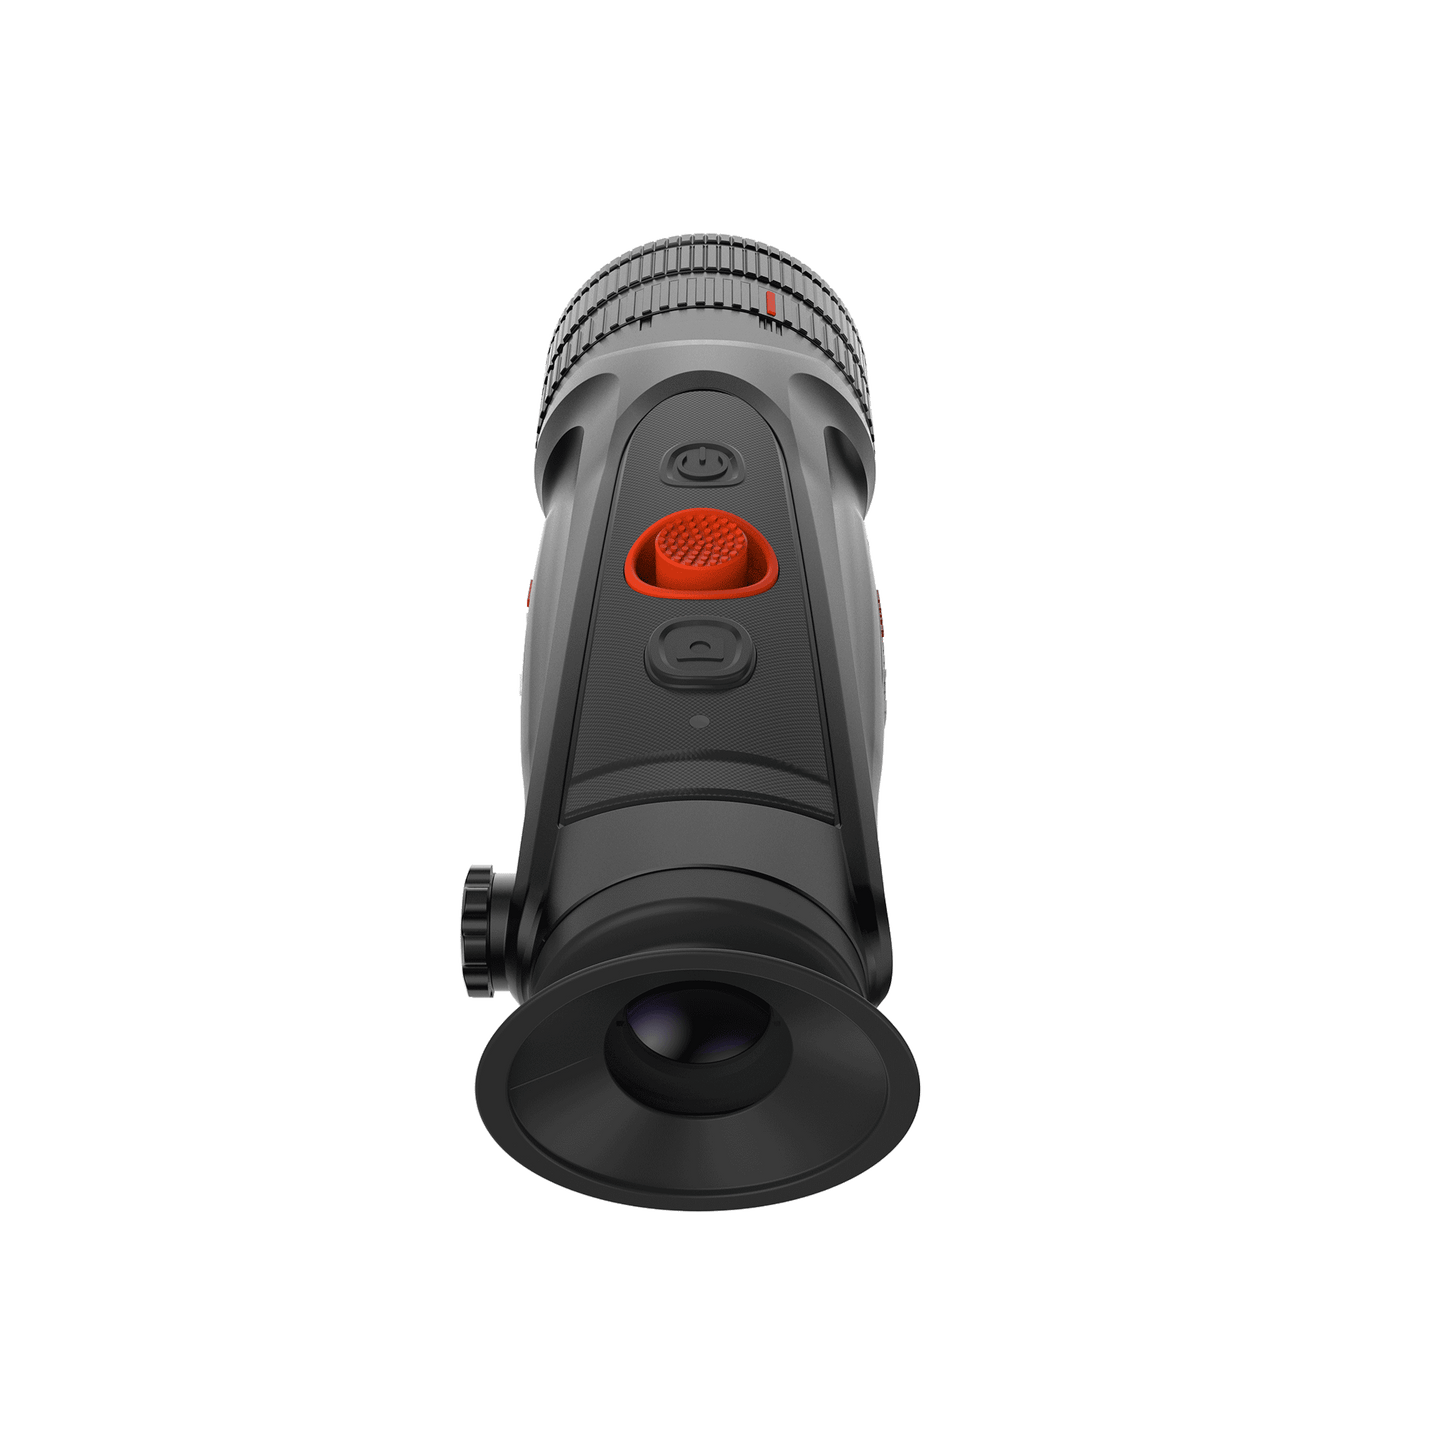 Cyclops 340D Thermal Imaging Monocular